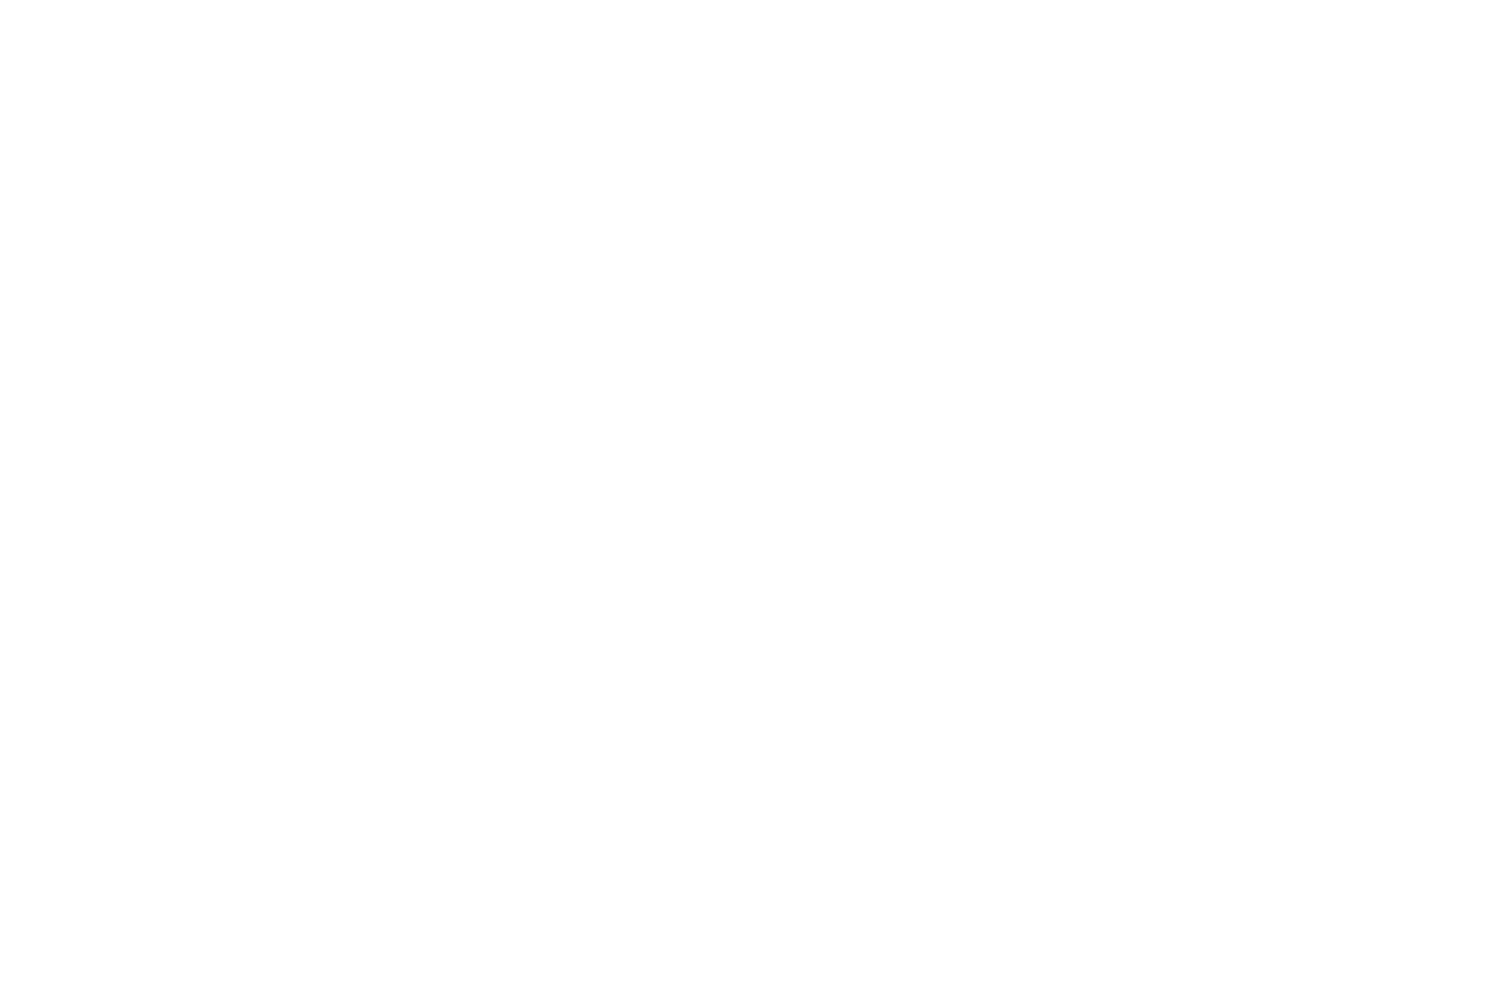 Sapanca Bamboolow Resort - Sapanca Gölü Kenarında Konaklama